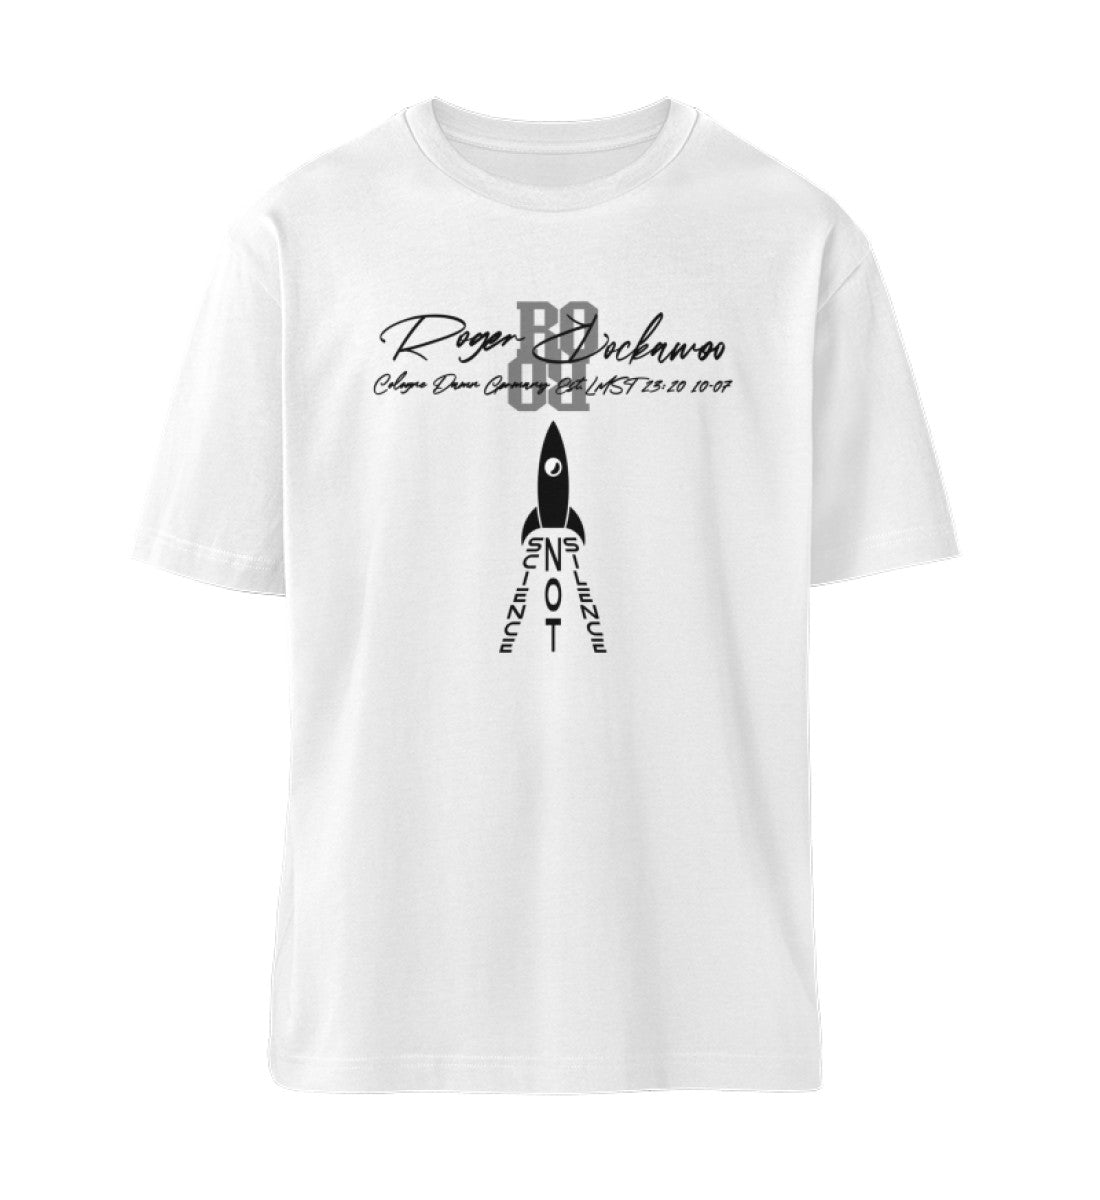 T-Shirt Unisex Damen und Herren im Relaxed Fit bedruckt mit dem Design der Science not Silence Edition im Roger Rockawoo Clothing Webshop Farbe White-3